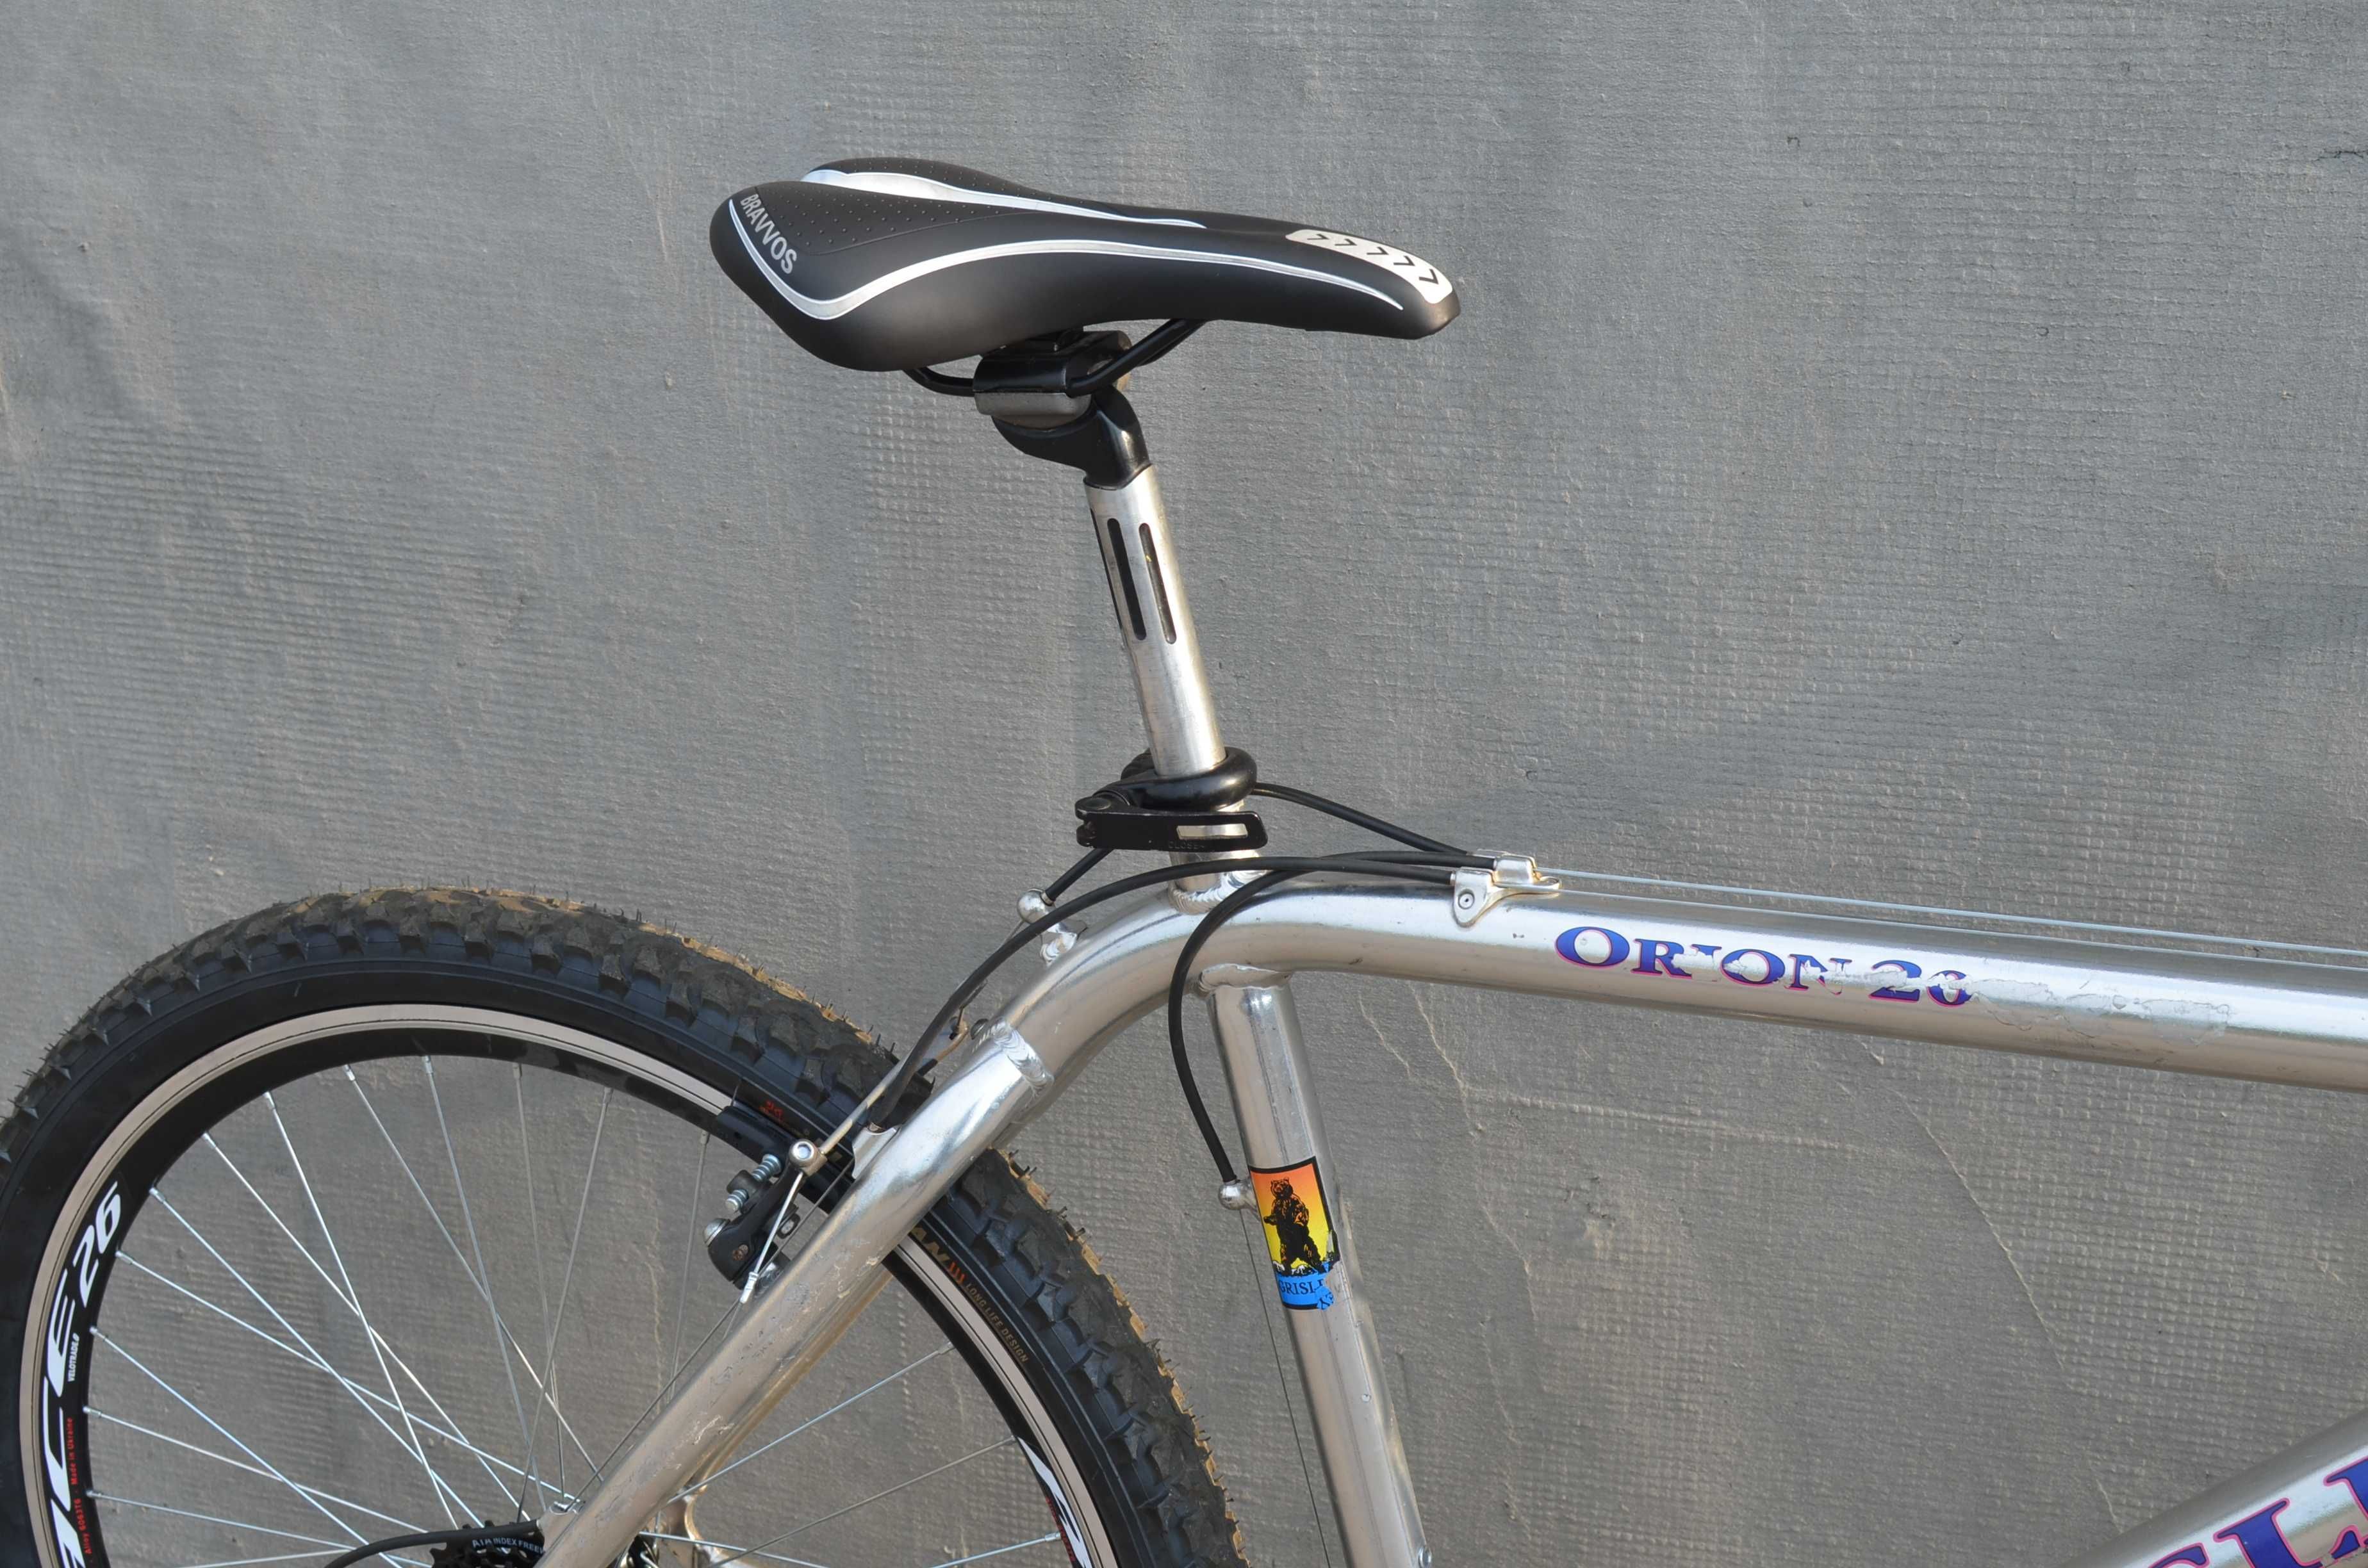 Горный велосипед Grisley Orion 20, oldmtb